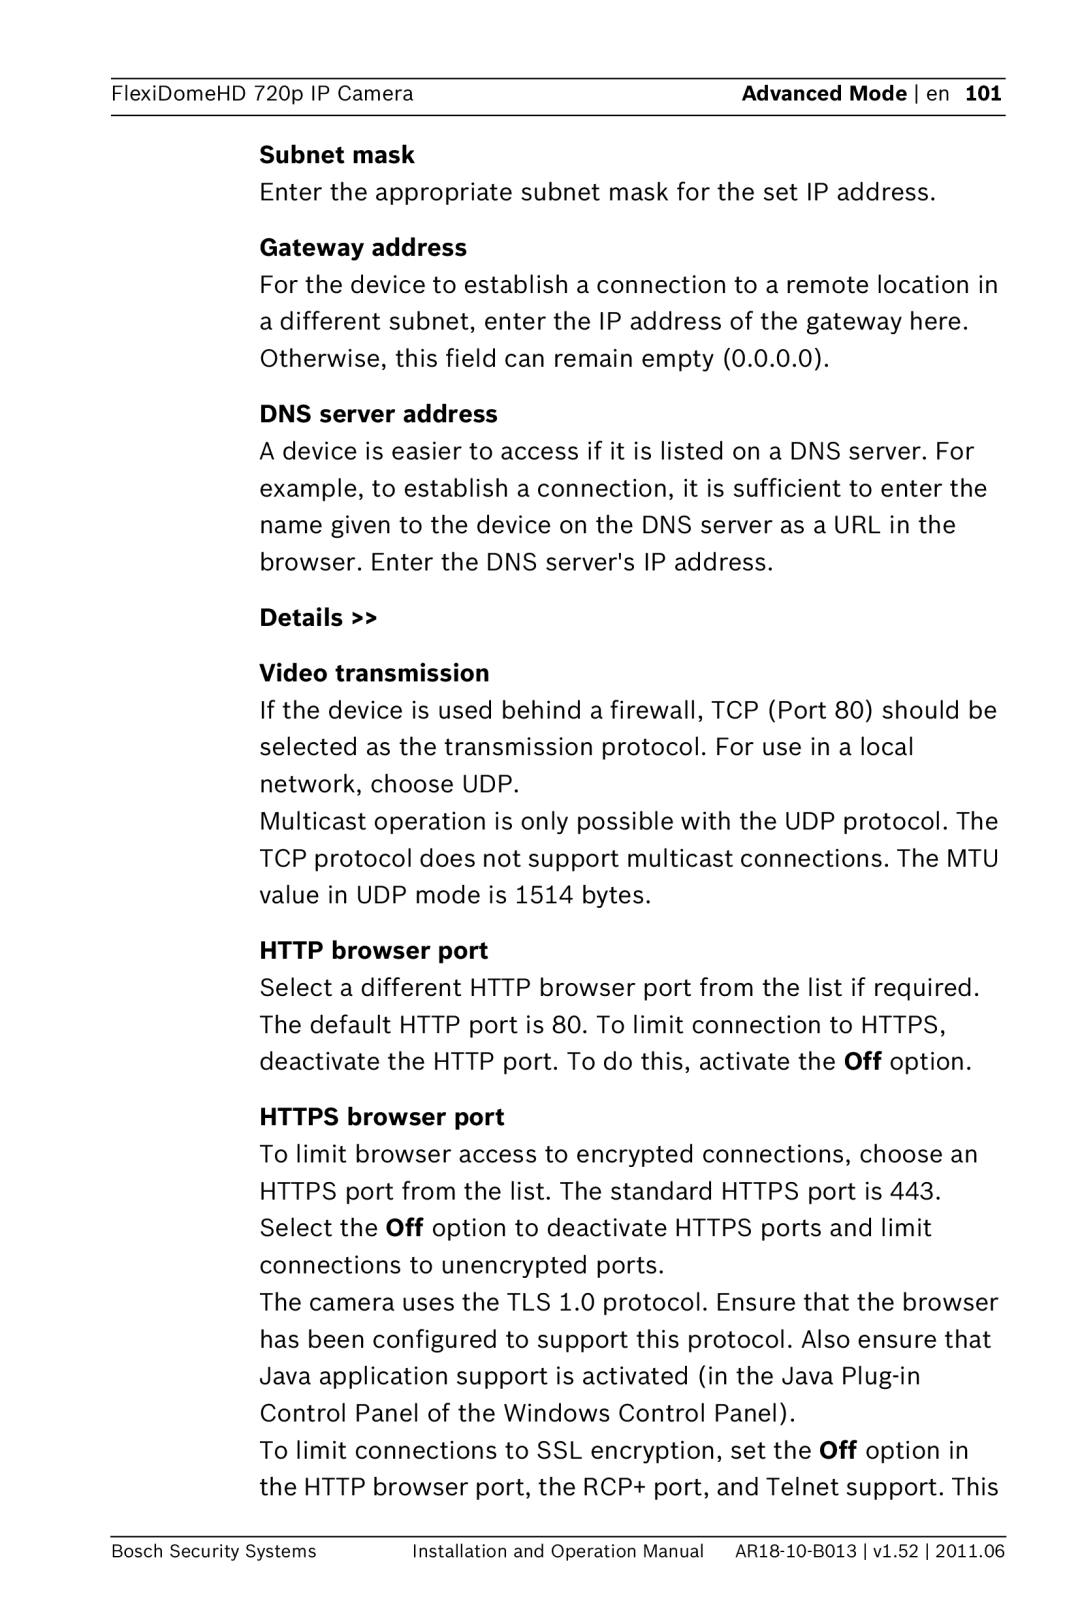 Bosch Appliances NDN-921 DNS server address, Details >> Video transmission, HTTP browser port, HTTPS browser port 